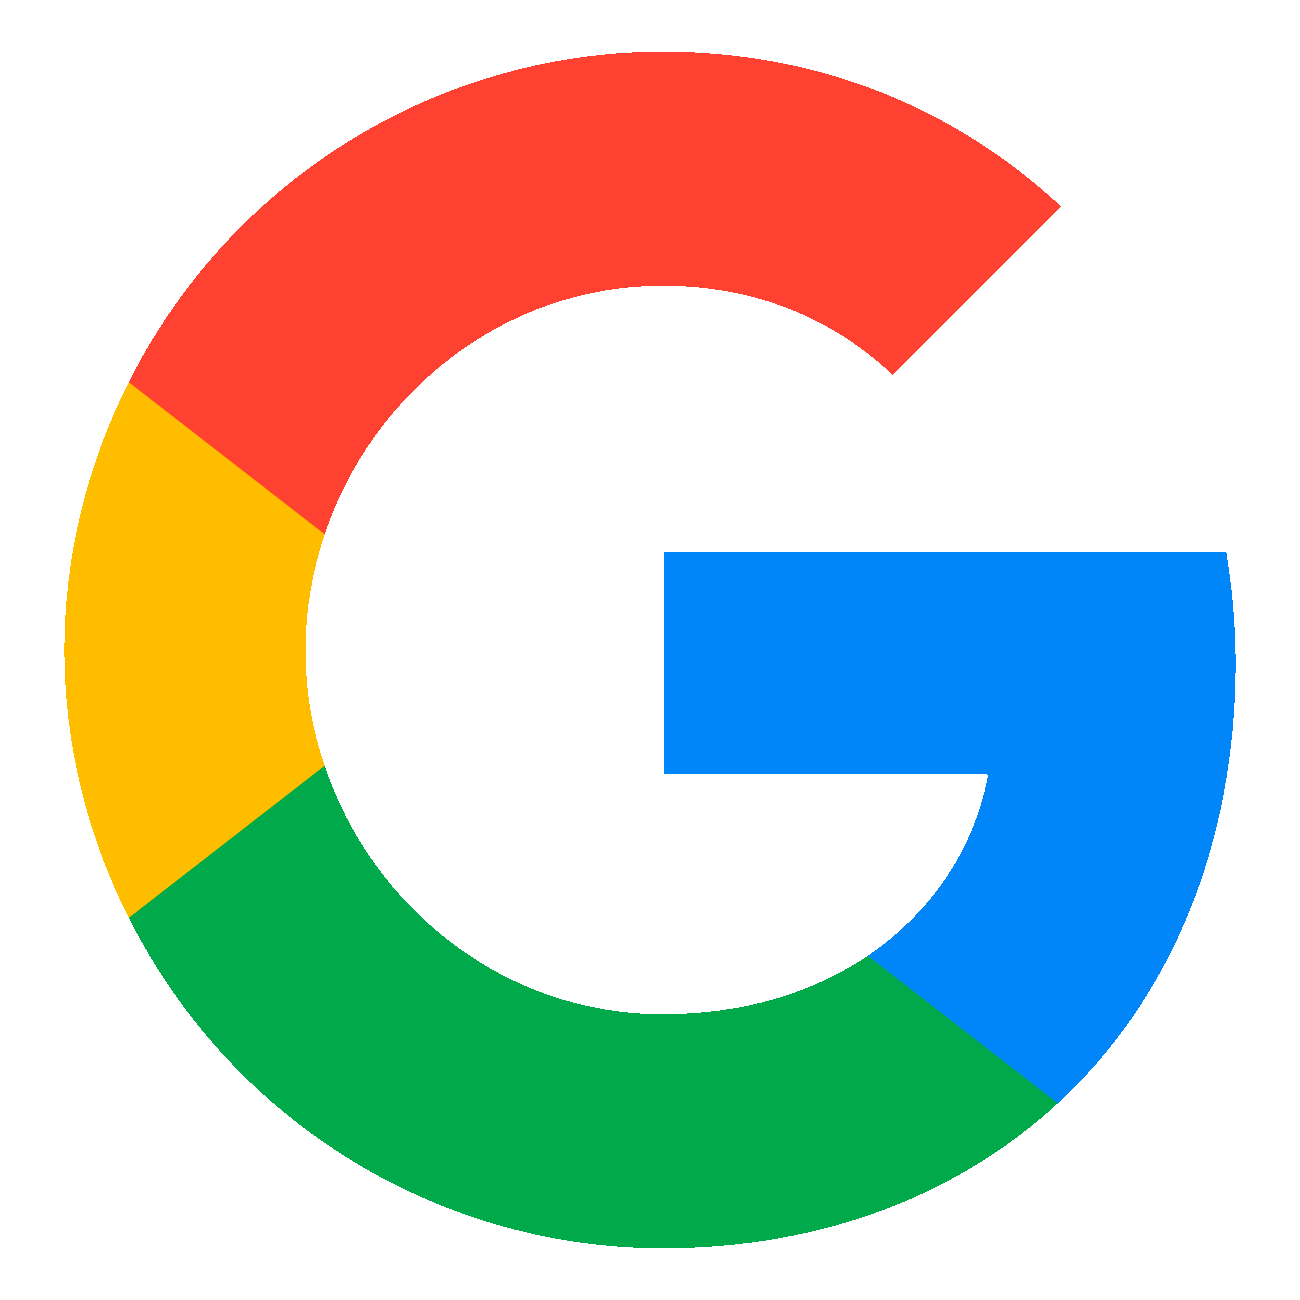 Google Banner Logo